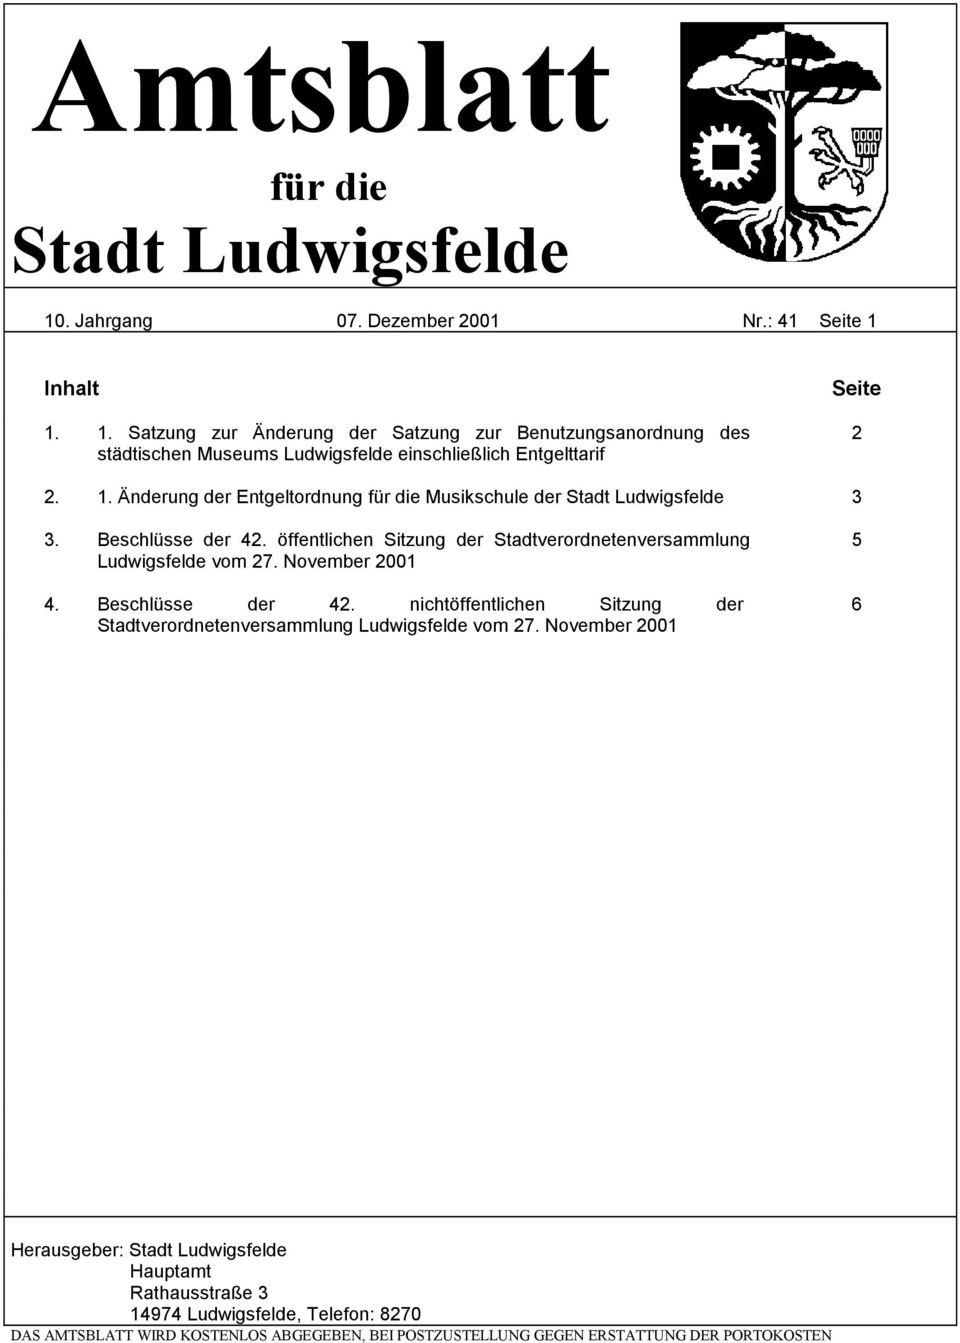 Beschlüsse der 42. nichtöffentlichen Sitzung der Stadtverordnetenversammlung Ludwigsfelde vom 27.